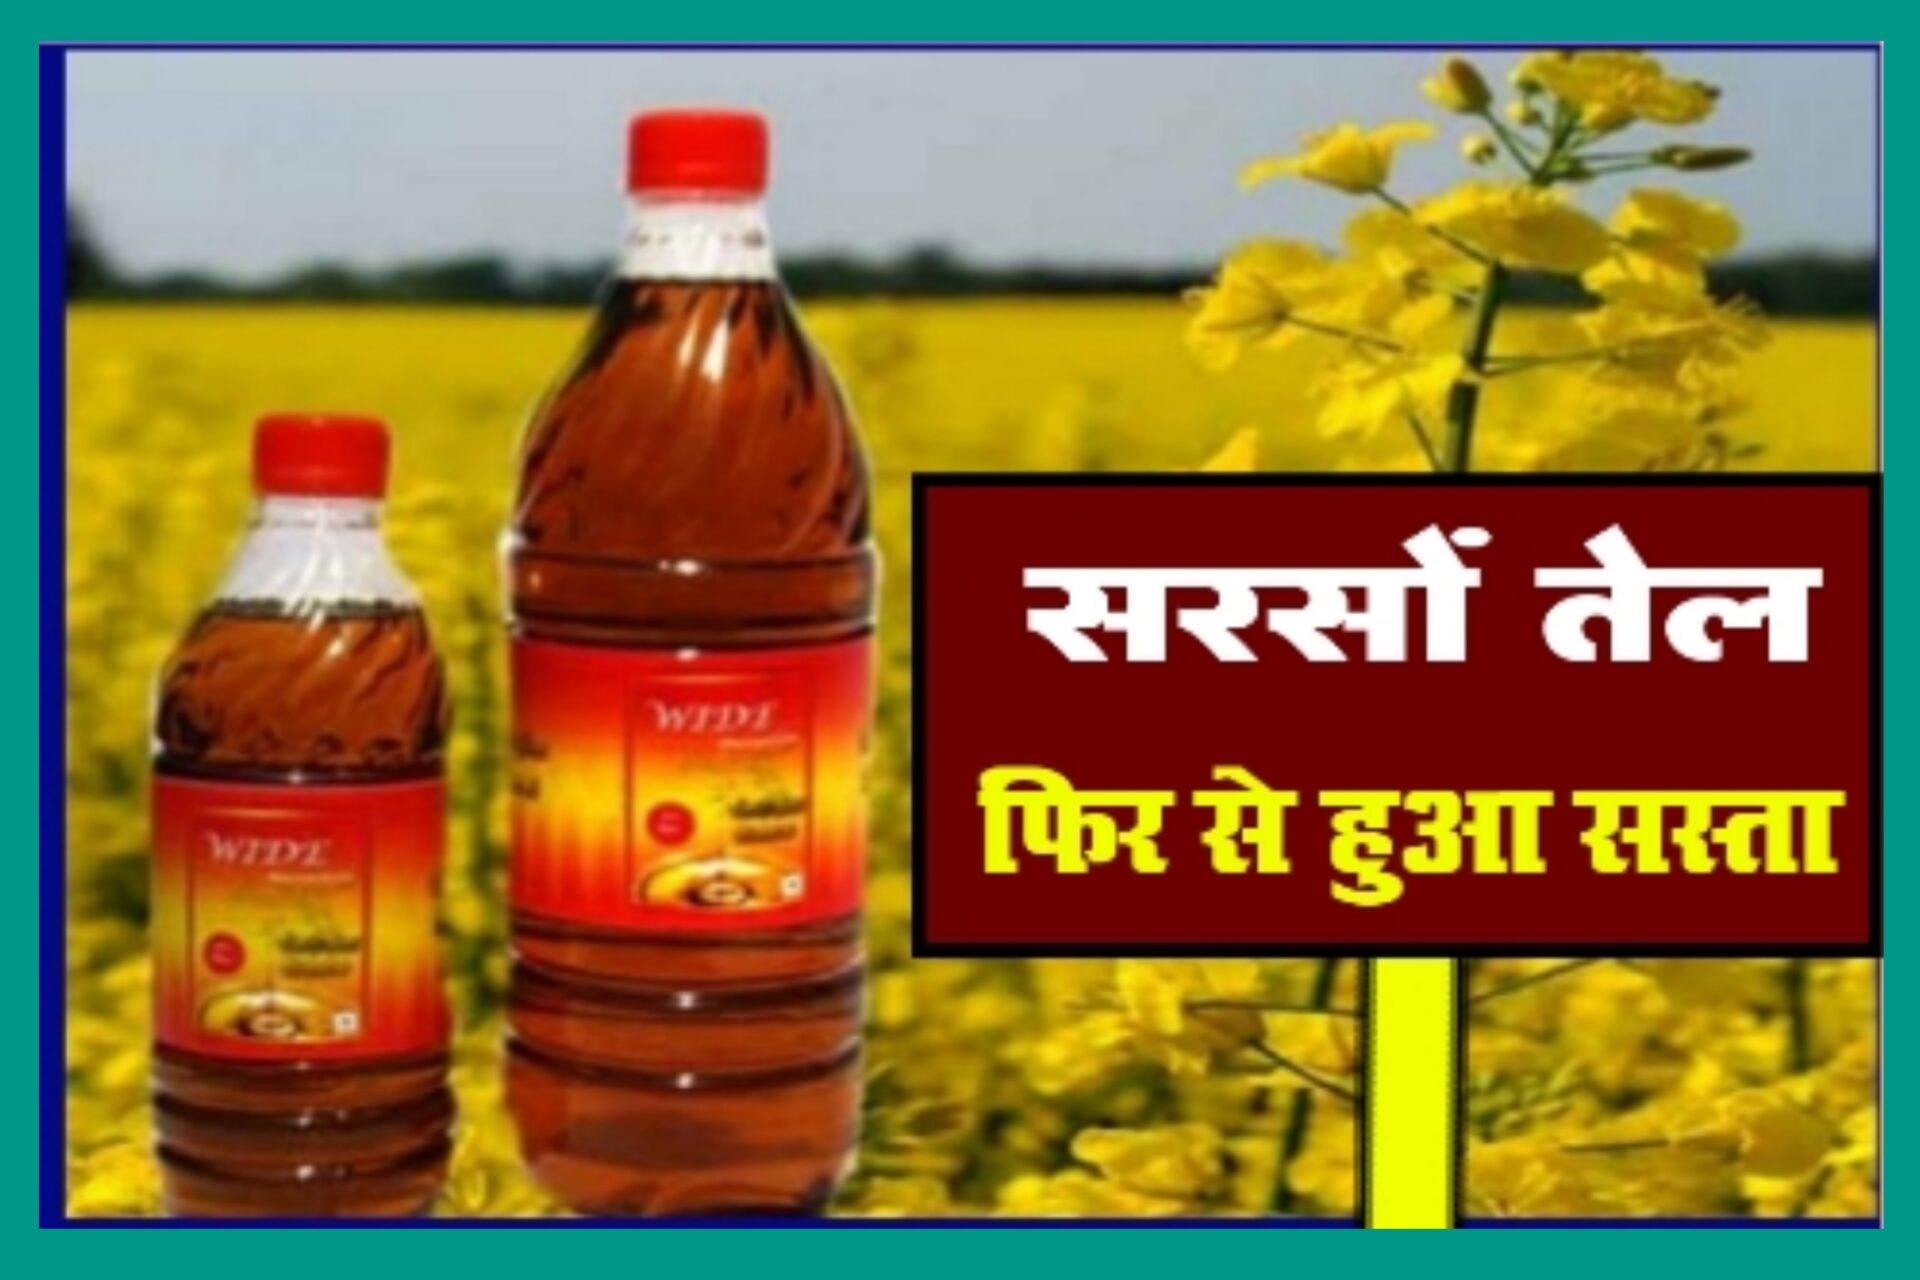 Mustard Oil: बड़ी खुशखबरी, 37 रुपये सस्ता हुआ सरसों का तेल, सिर्फ 110 रुपये लीटर हुआ भाव